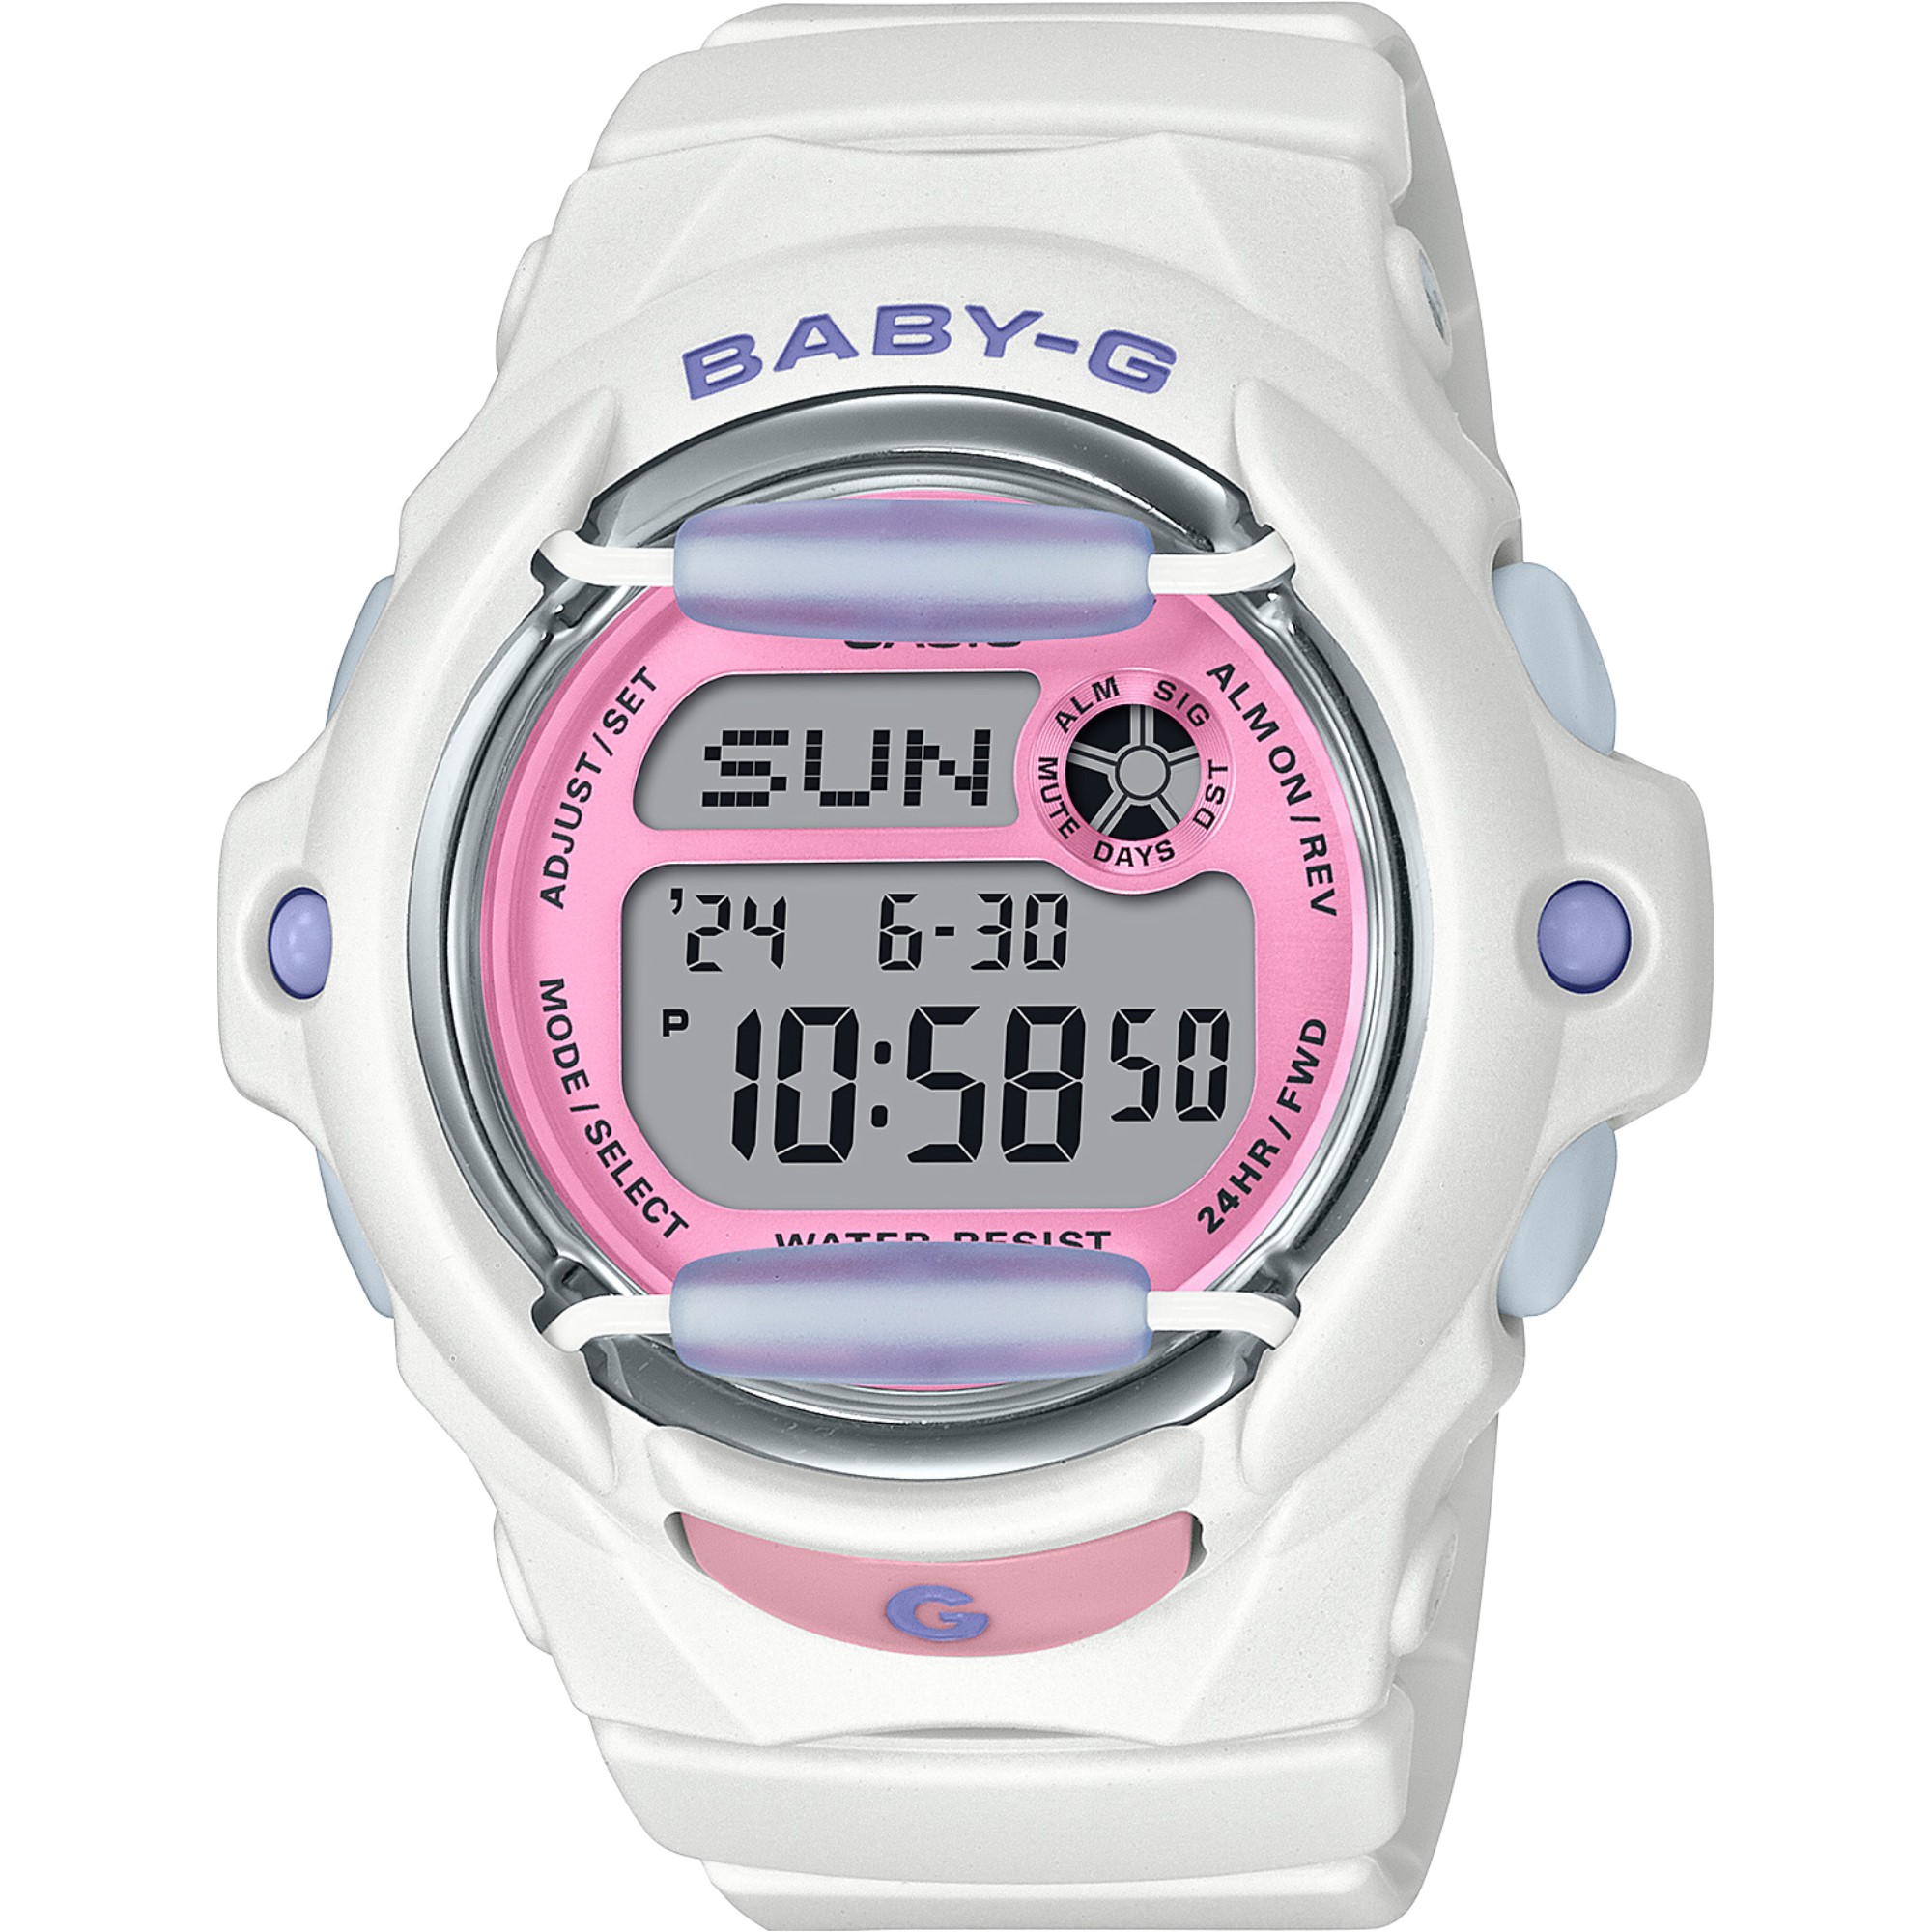 驚きの値段で 腕時計(デジタル) BABY-G5338 腕時計(デジタル 